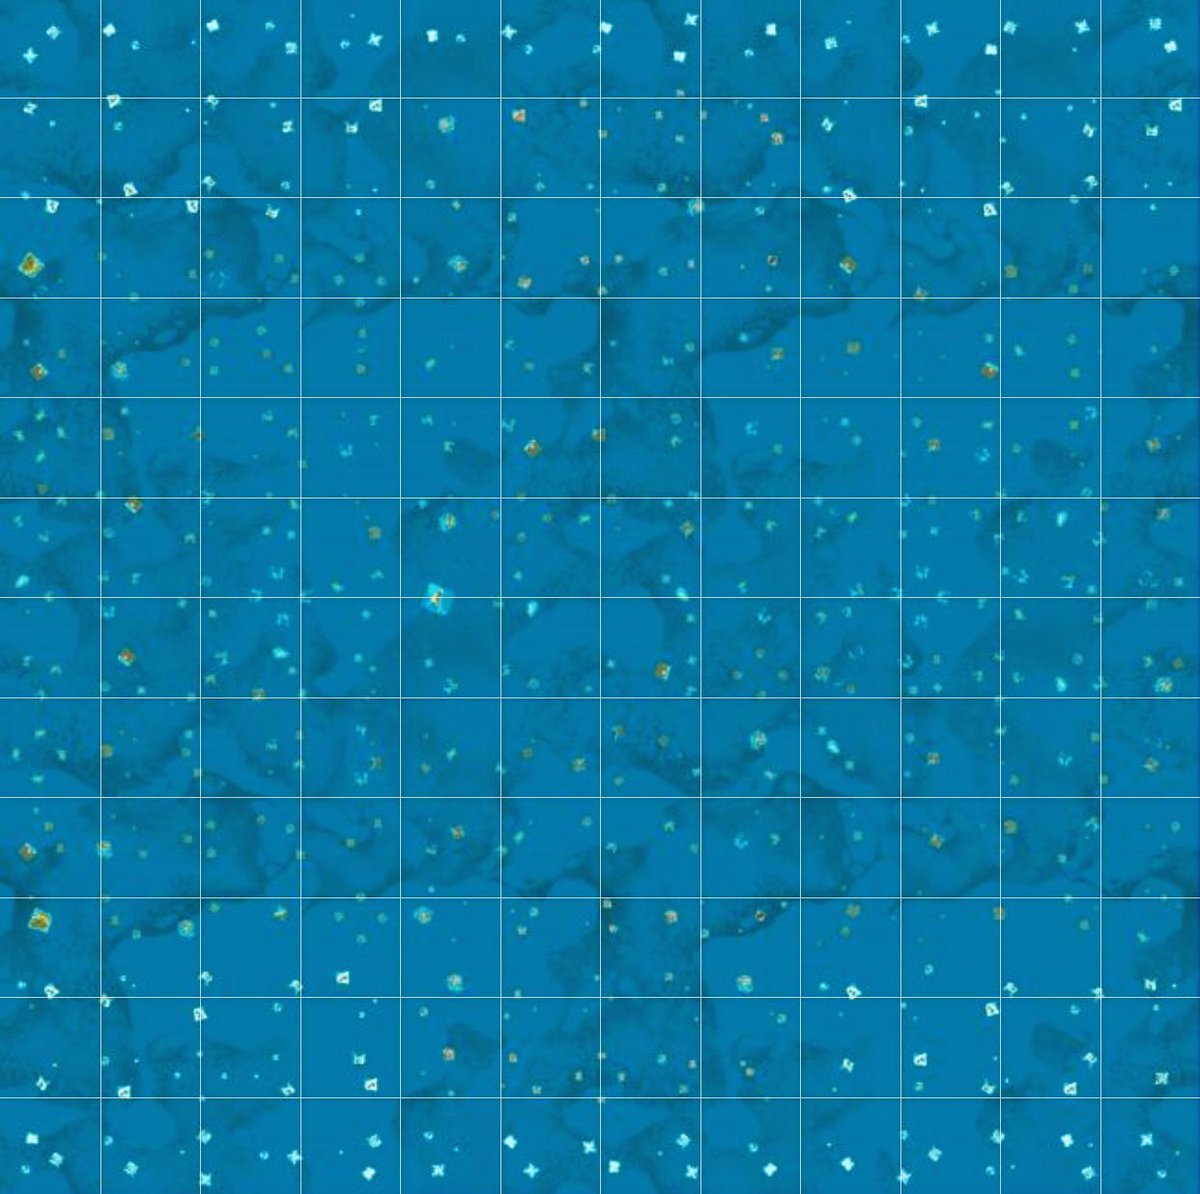 Mad B 公式がリツイートしてたけど これが海賊mmo アトラス の全体マップらしい 規模がデカ過ぎてもはやマップなのか何なのか分からないレベルw Arkマップの約10倍の広さらしいから だいたいグリッド線の正方形1個がarkアイランドマップくらいの広